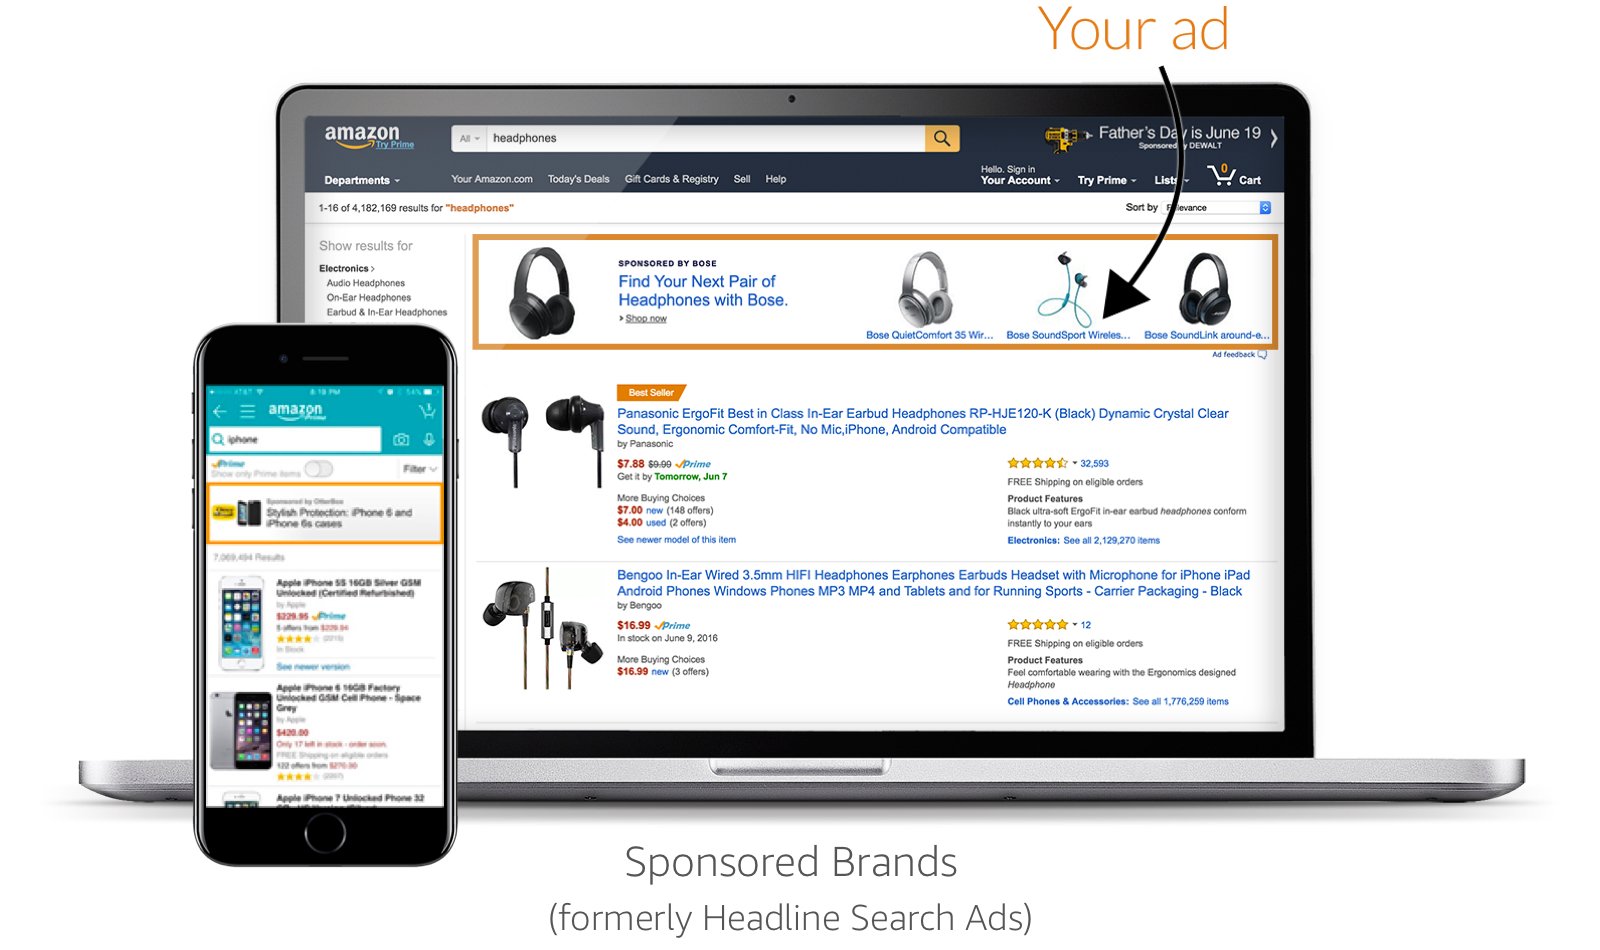 Anuncios de sponsored Brands en Amazon